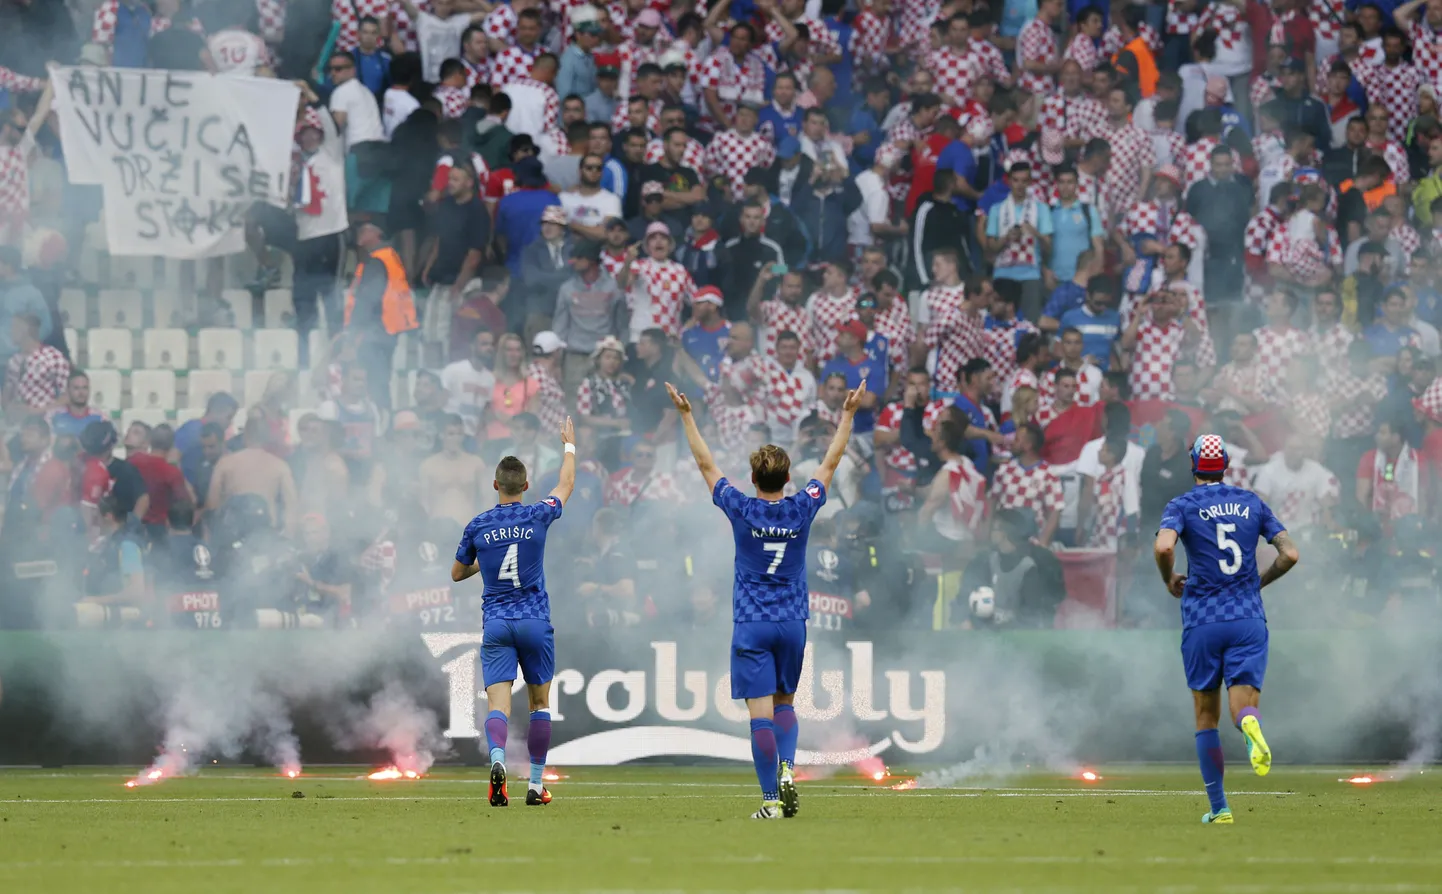 Horvaatia - Tšehhi mäng tuli kohtunikul katkestada, kuna horvaatidest huligaanid loopisid mängu ajal platsile pürotehnikat.